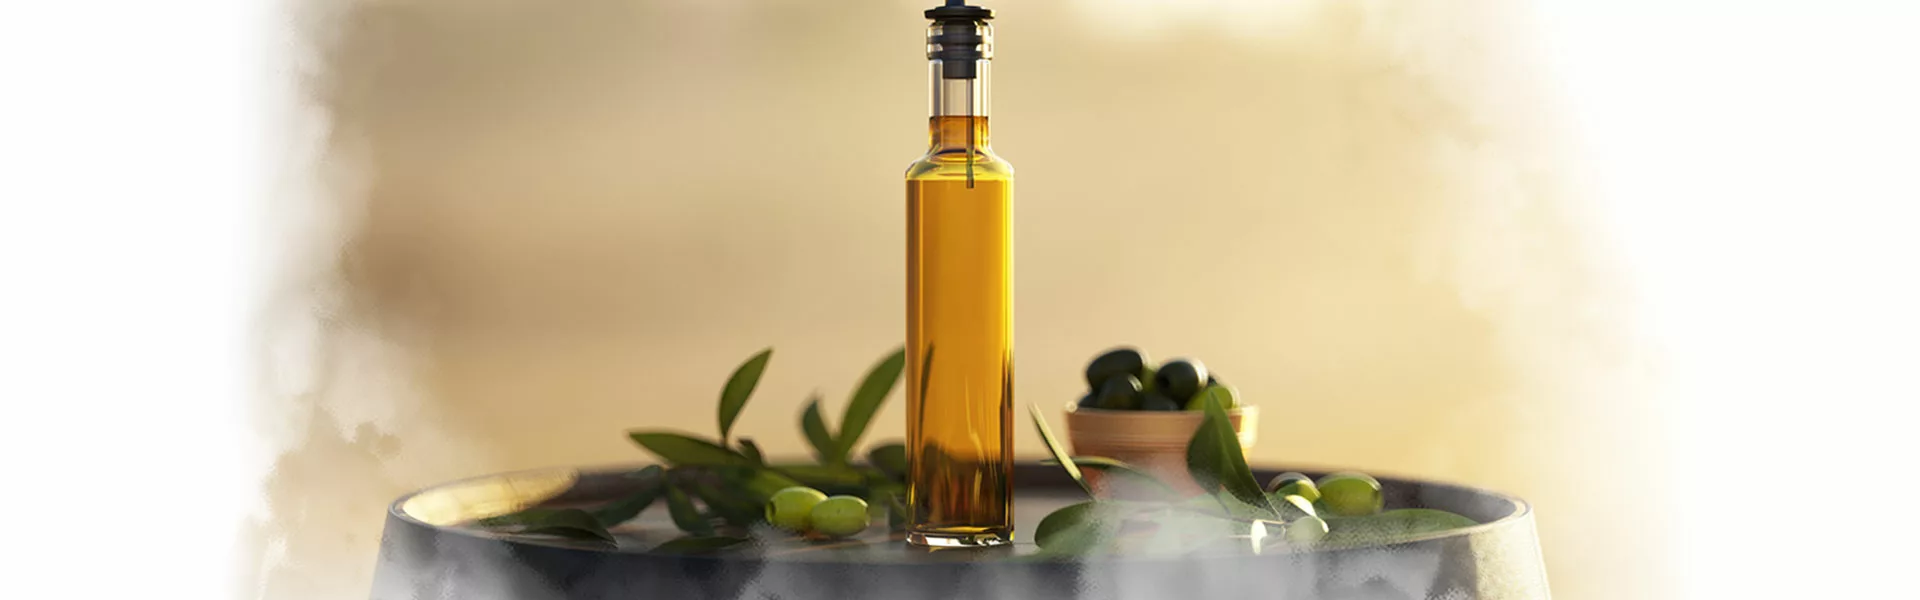 Olio Extravergine di oliva Peranzana Offerta